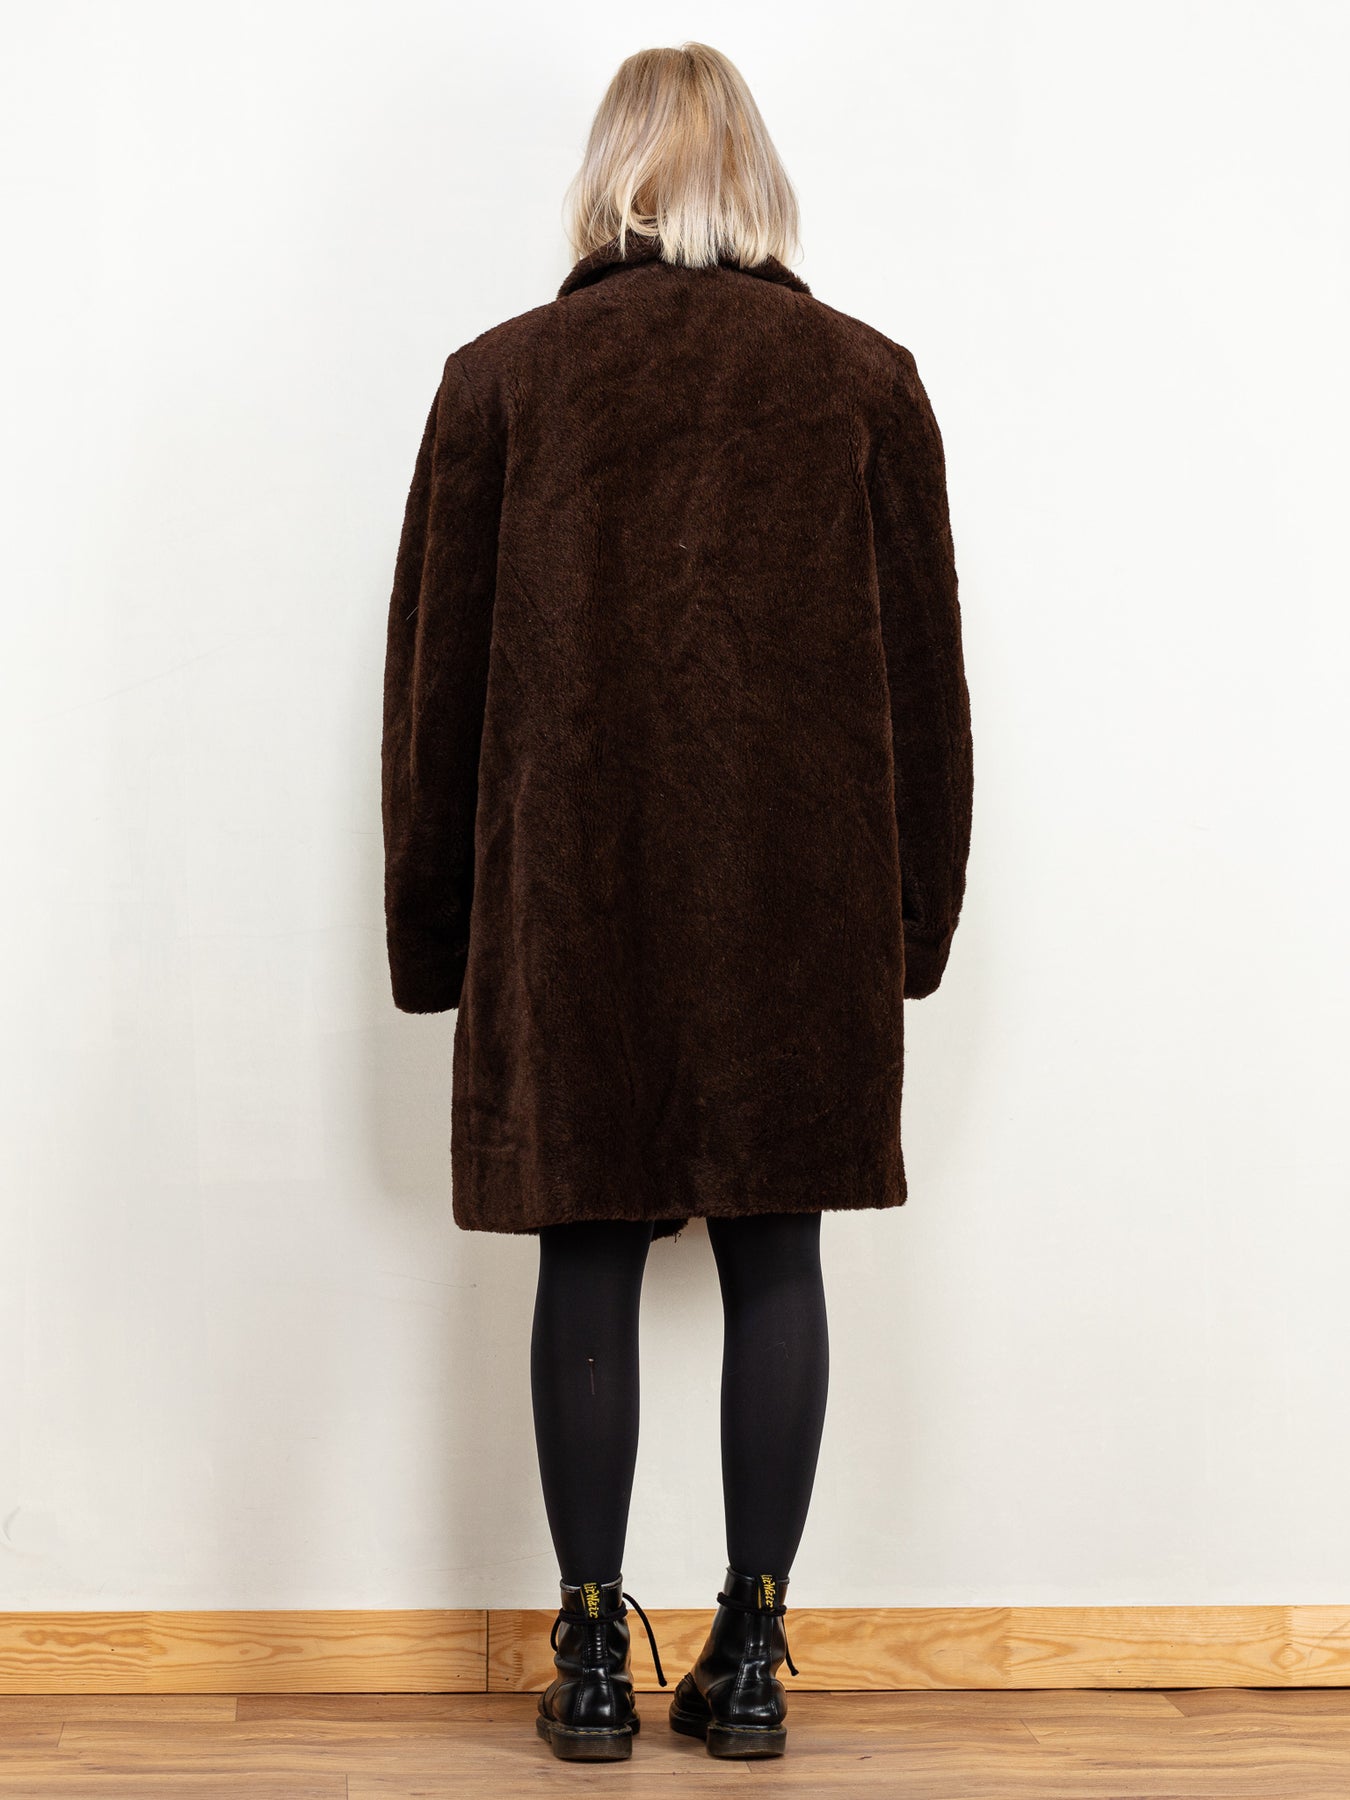 1970s Retro Style Brown Faux Fur Crop Jacket – Unique Vintage